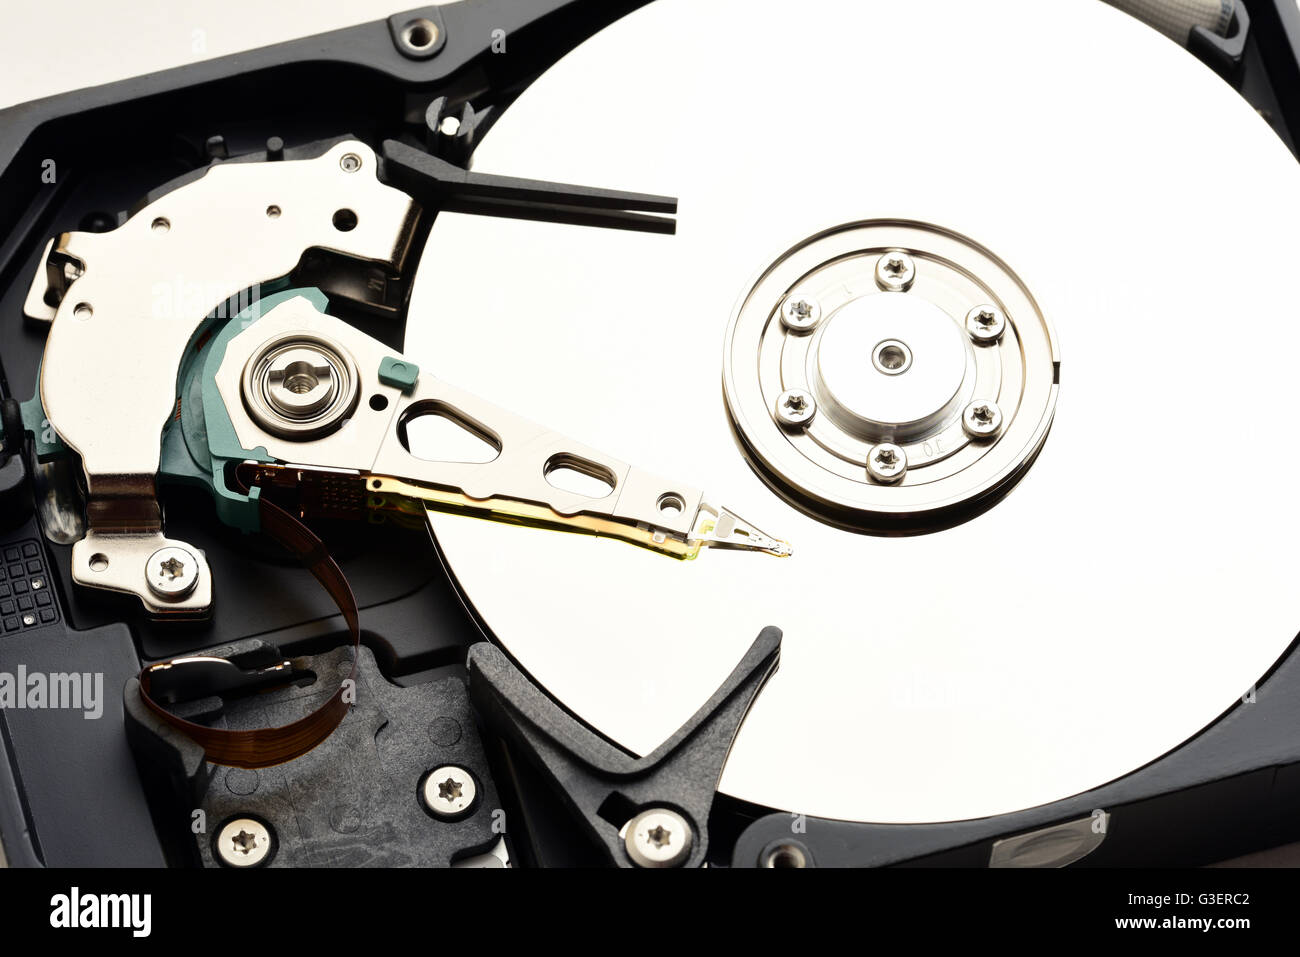 Computer sata hard disk drive disassembled closeup Stock Photo